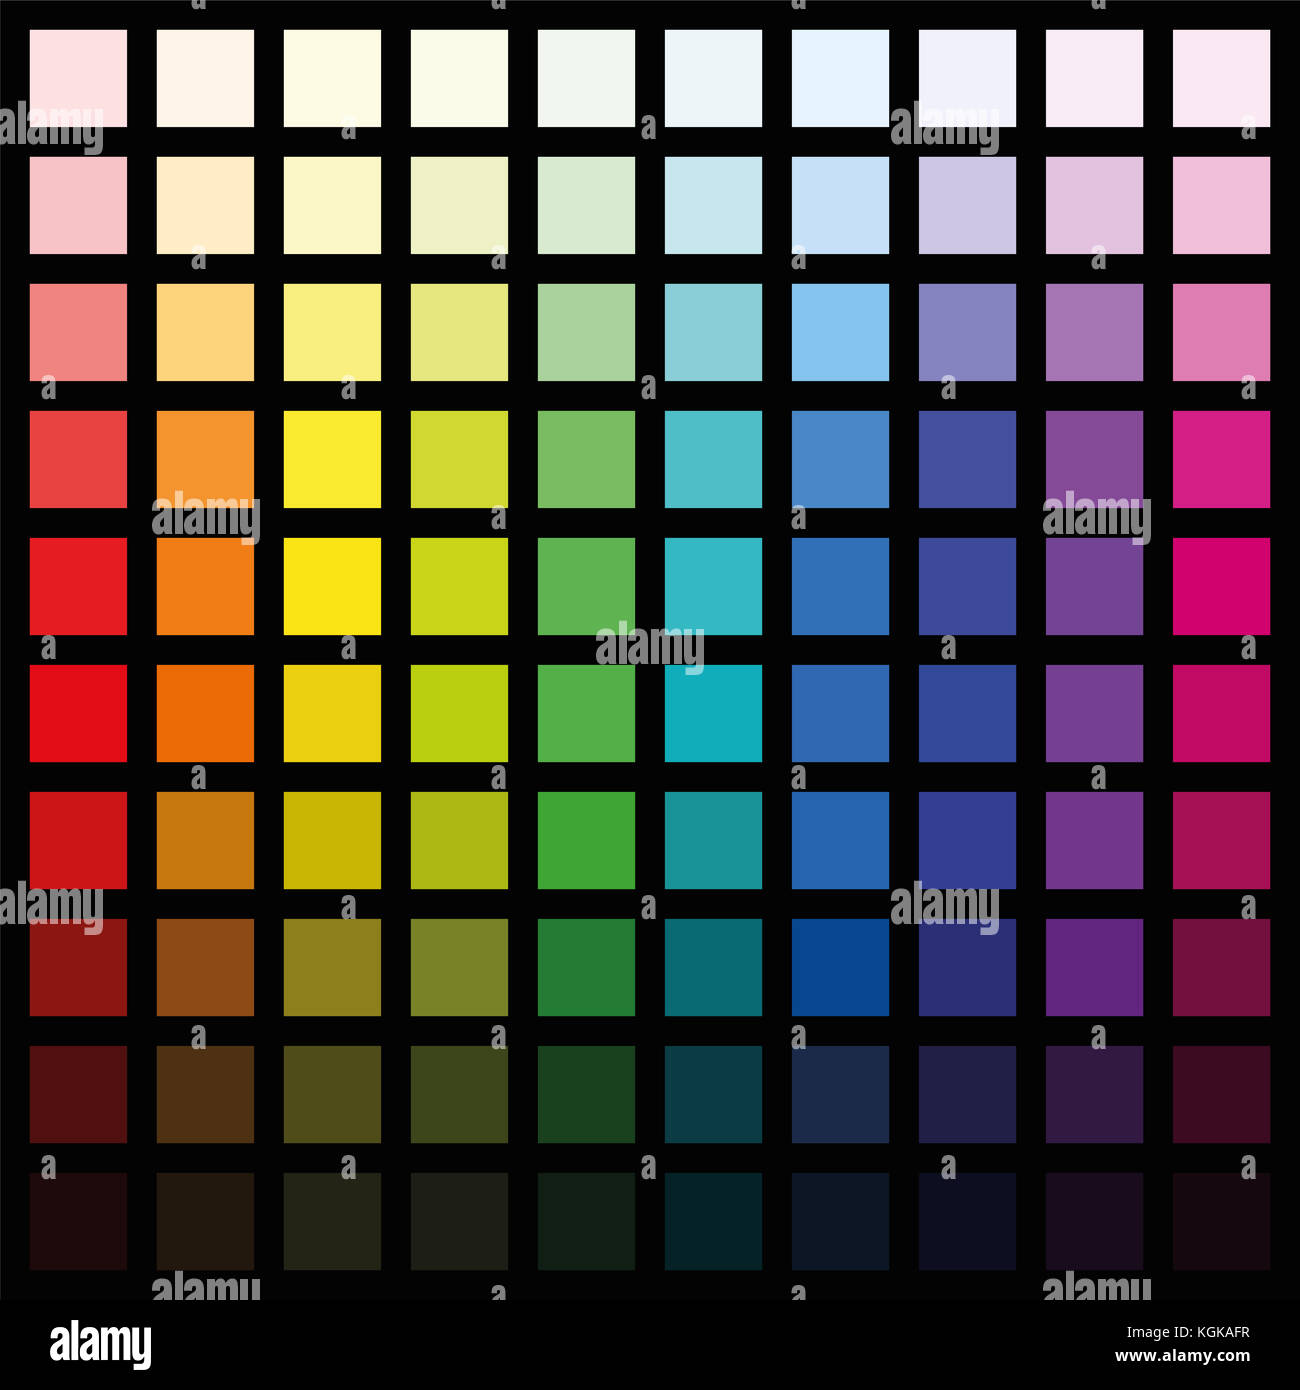 Cento diversi quadrati colorati - spettro di colori di pattern in vari saturazione da chiaro a scuro - quadrato formato dimensioni immagine su nero. Foto Stock